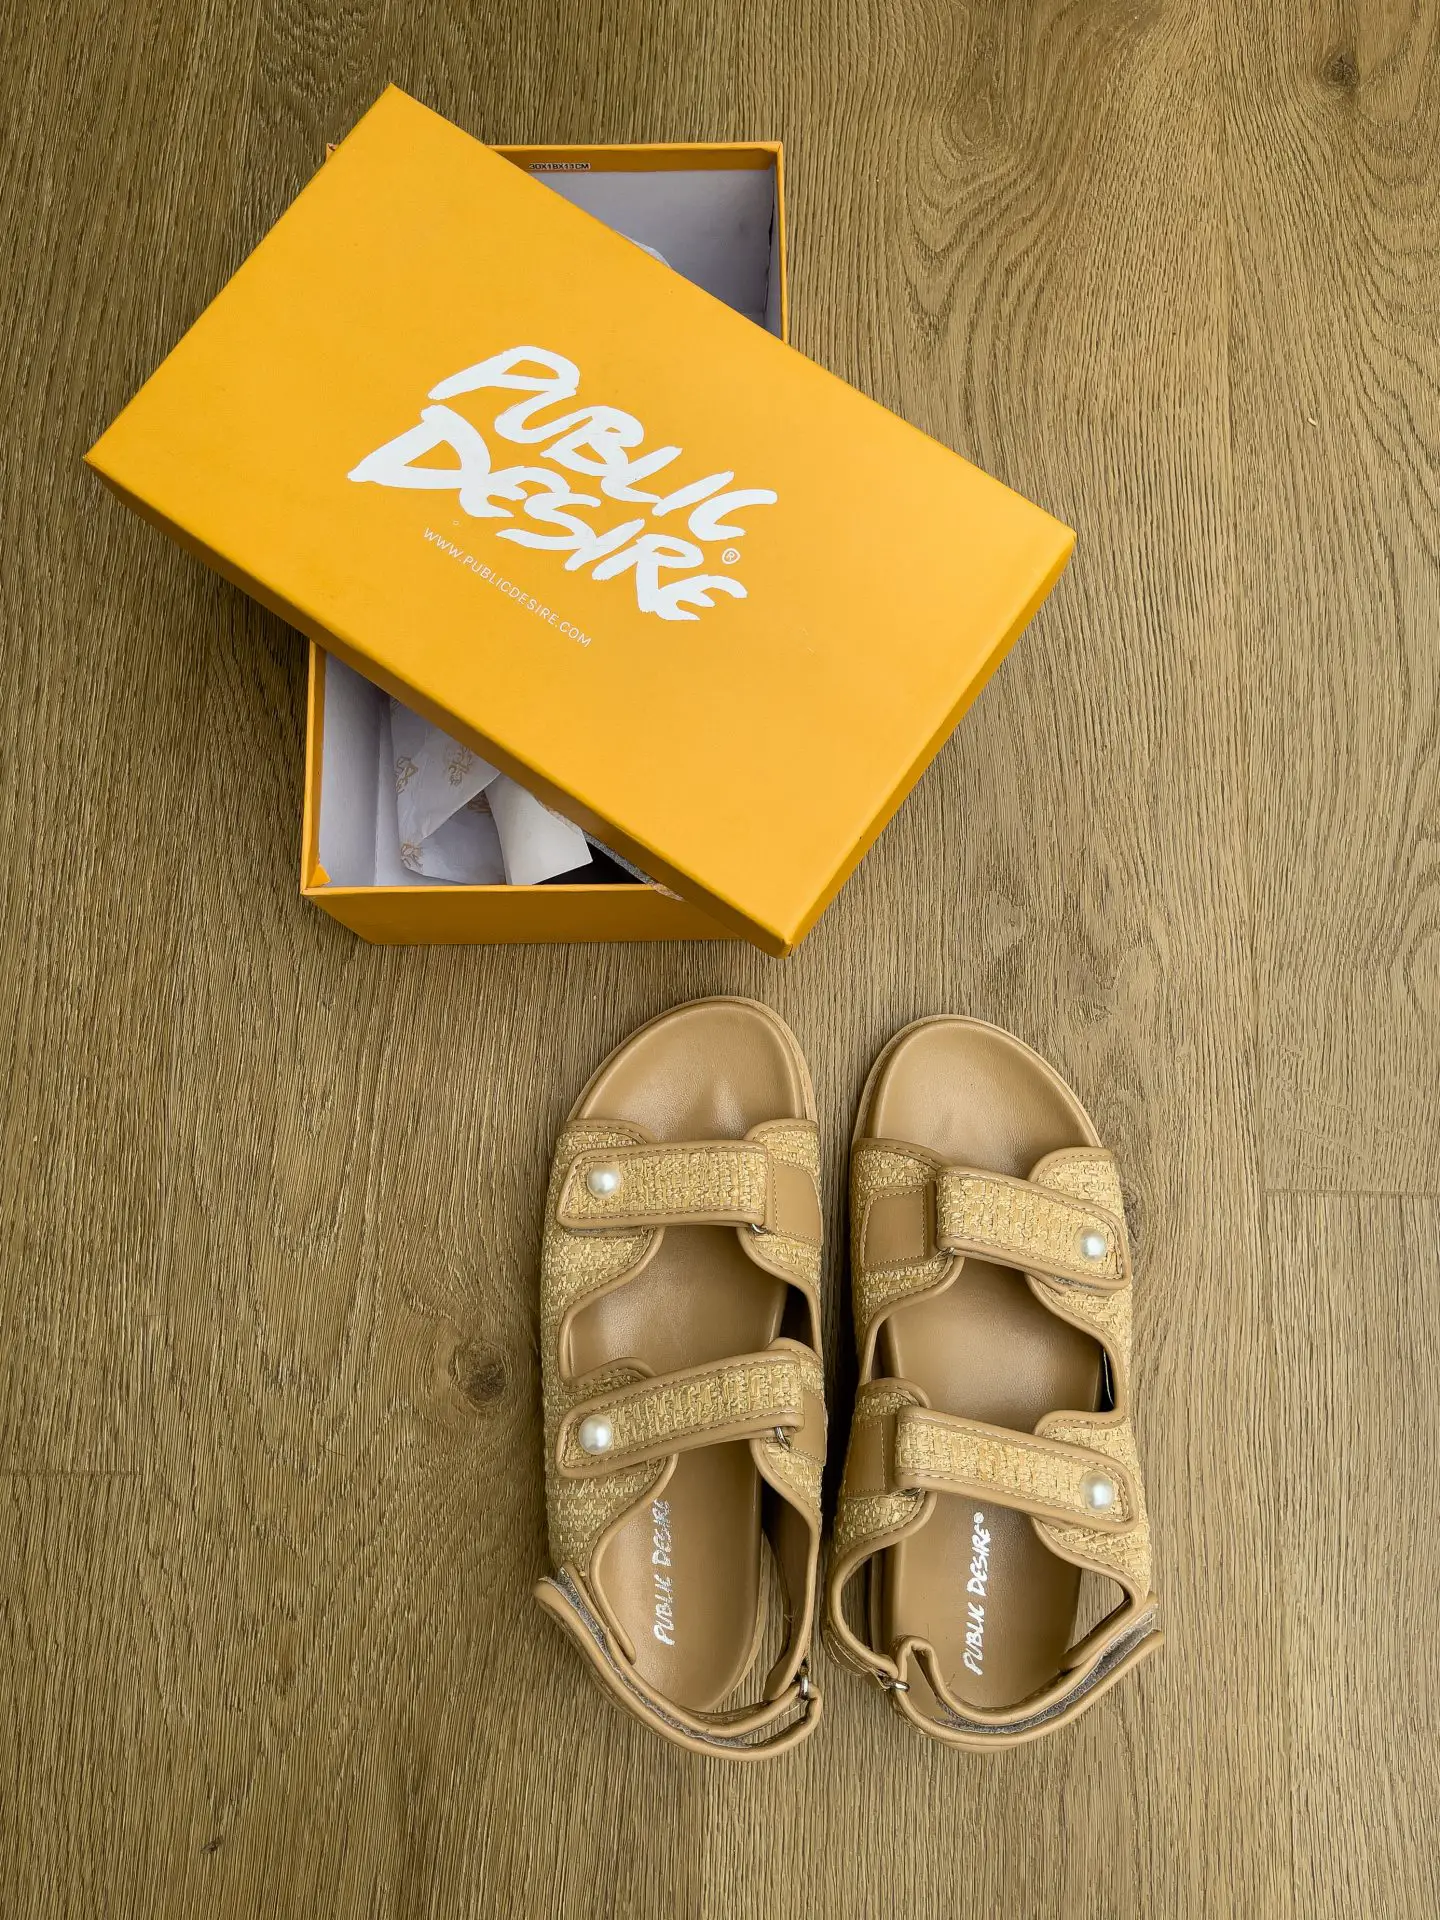 BEST Chanel Dad Sandals Dupe - SURGEOFSTYLE by Benita